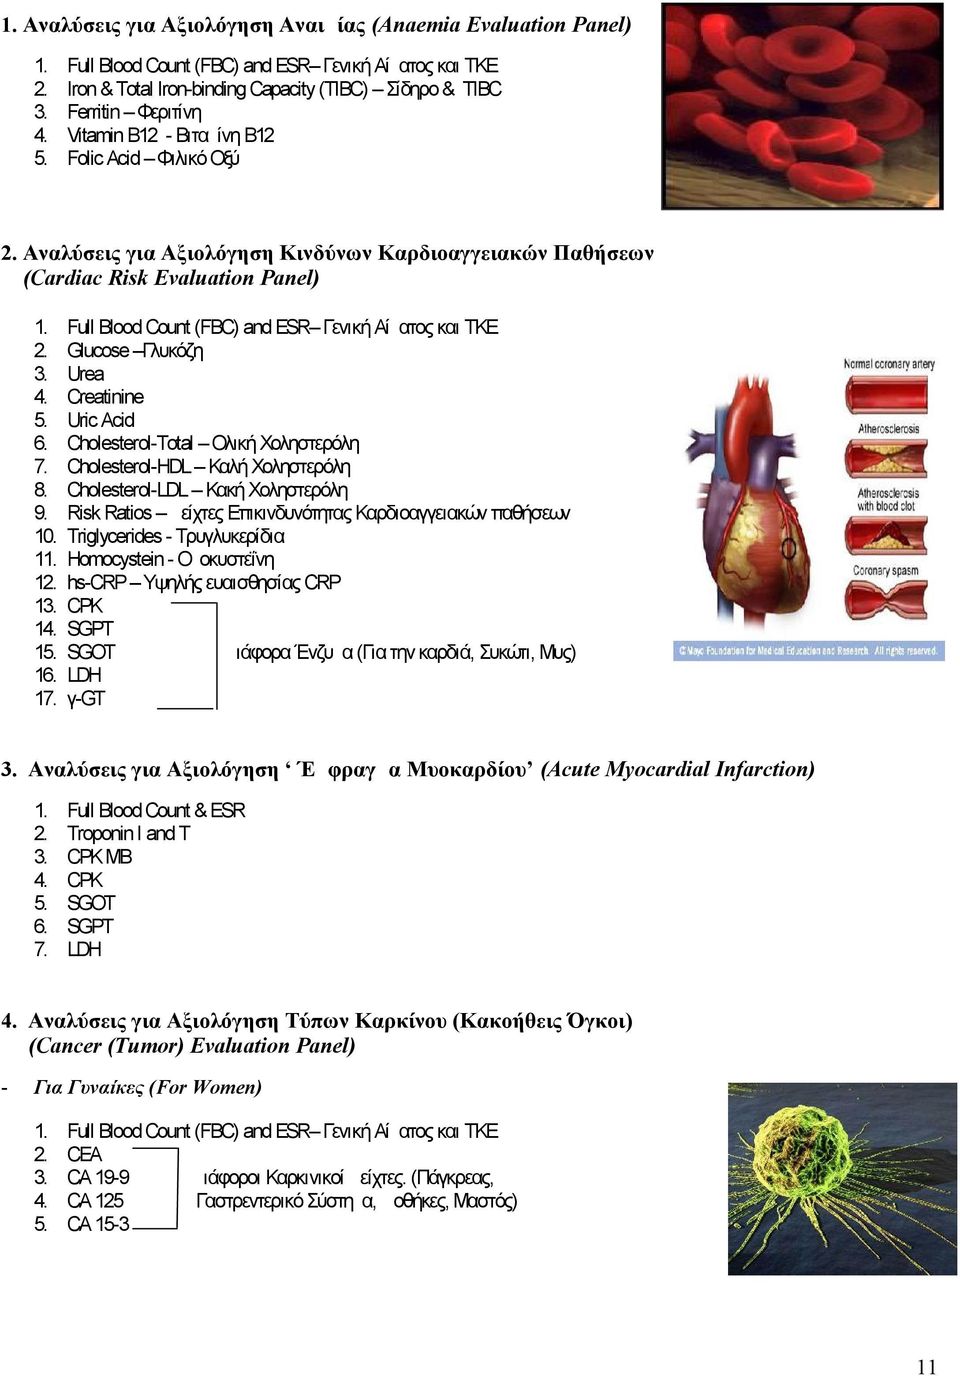 Αναλύσεις για Αξιολόγηση Κινδύνων Καρδιοαγγειακών Παθήσεων (Cardiac Risk Evaluation Panel) 1. 2. 3. 4. 5. 6. 7. 8. 9. 10. 11. 12. 13. 14. 15. 16. 17.